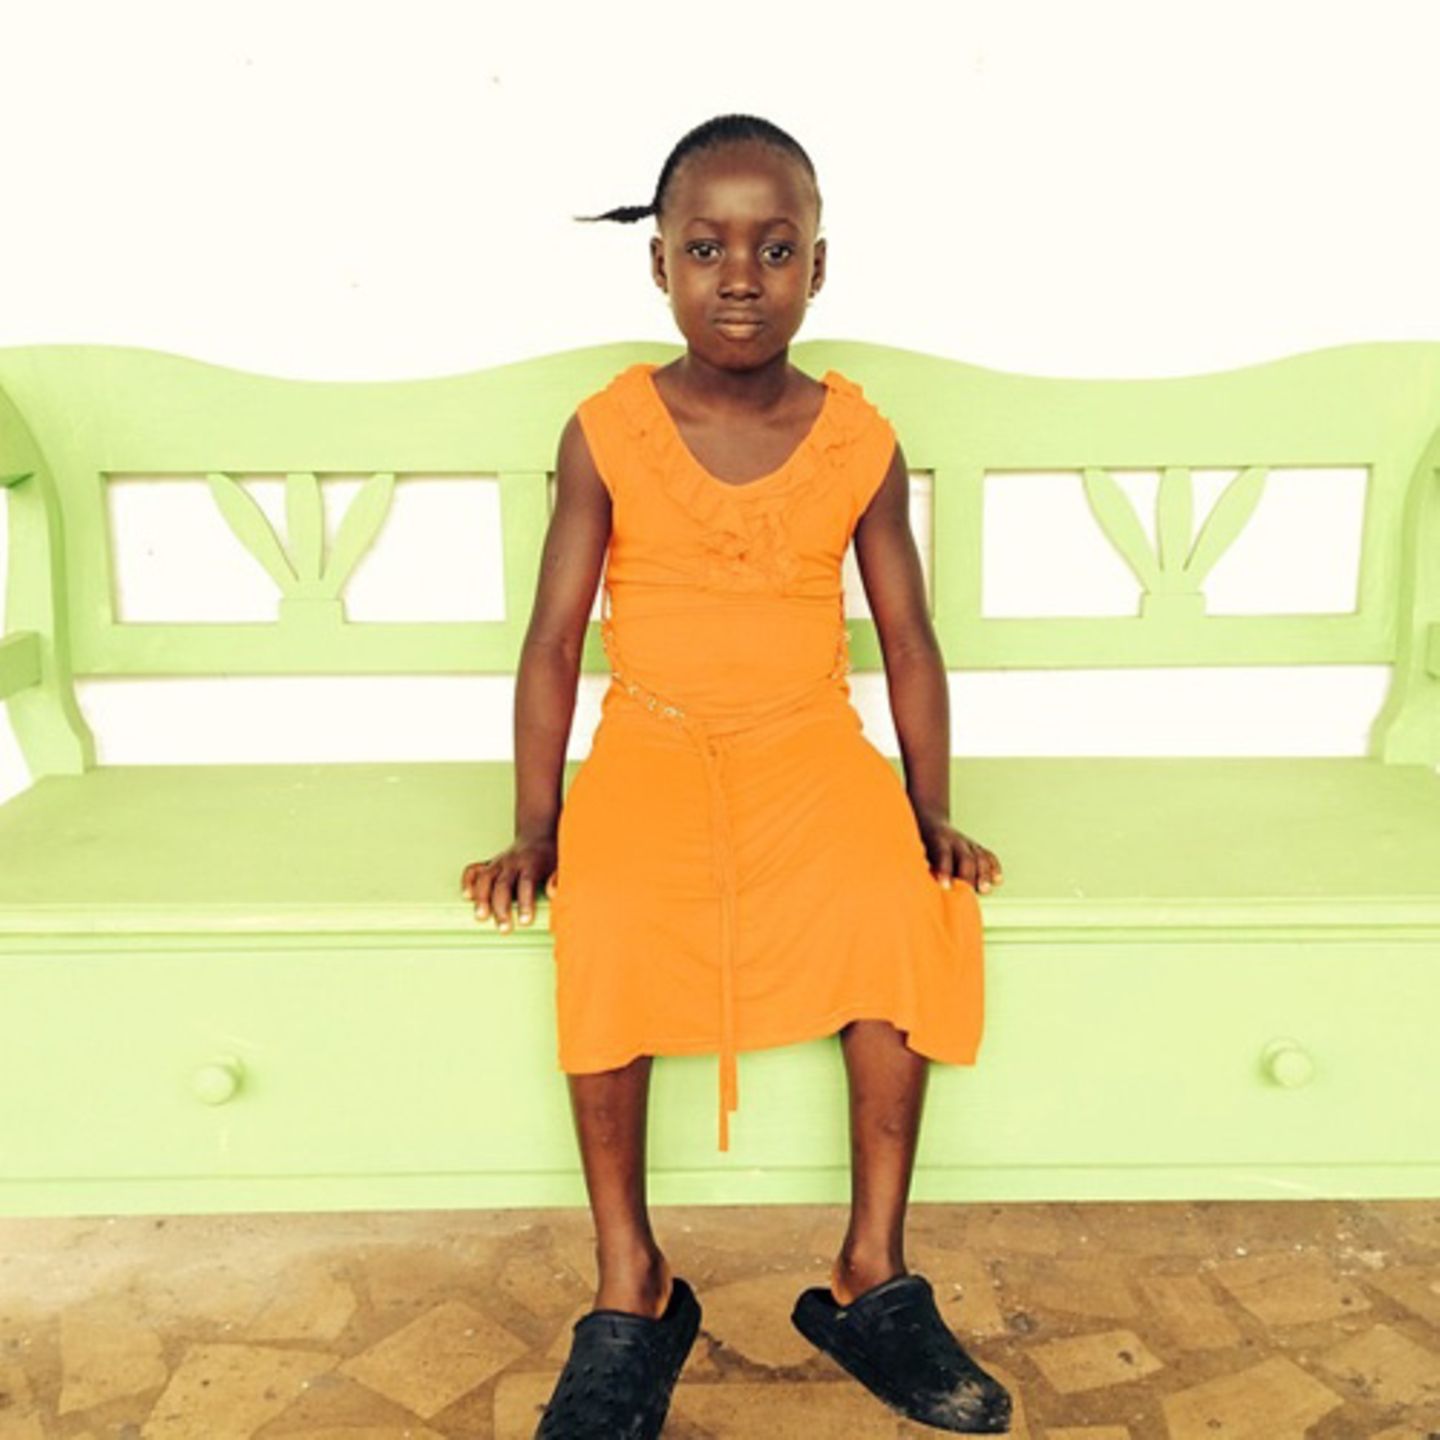 Die sechsjährige Miatta hat durch Ebola bereits ihren Vater und ihre kleine Schwester verloren. Ihre Mutter und die anderen Geschwister sind auch daran erkrankt. Weil Miatta gesund ist, muss sie zu Hause bleiben - ohne jemanden, der sich um sie kümmert. Die Mitarbeiter von "More Than Me" haben sie in ihre Obhut genommen, um sie für 21 Tage zu isolieren. Doch nach einem Tag zeigten sich bei Miatta erste Krankheitssymptome, sodass sie in eine Ebola Treatment Unit der Ärzte ohne Grenzen gebracht werden musste.